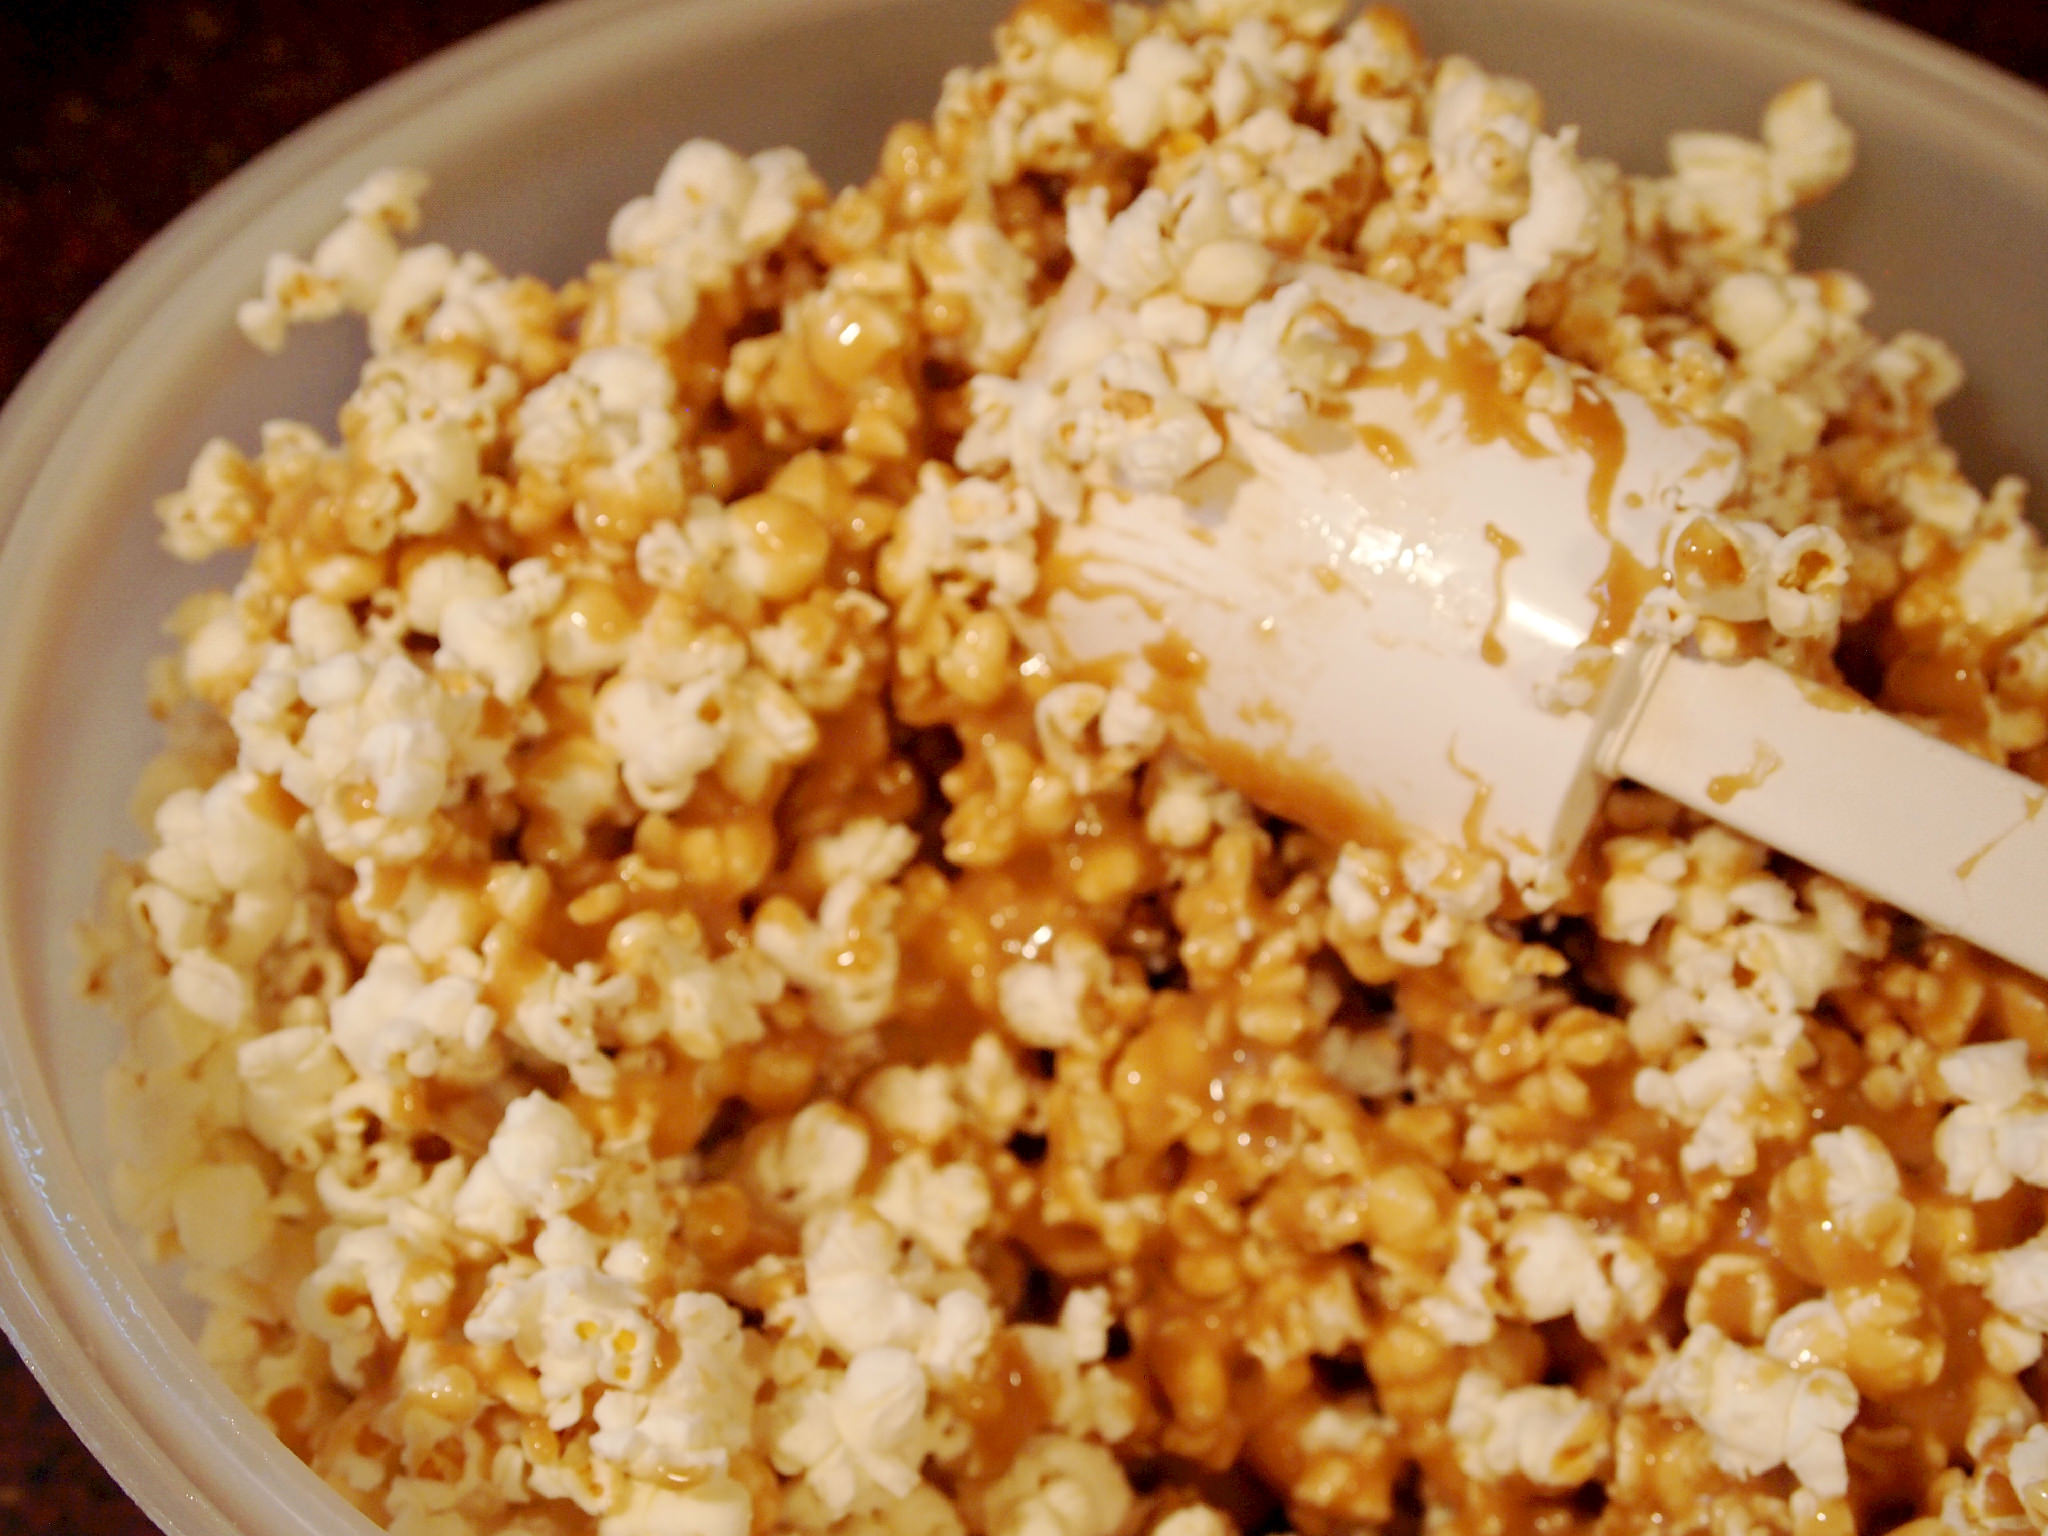 coating popcorn with caramel